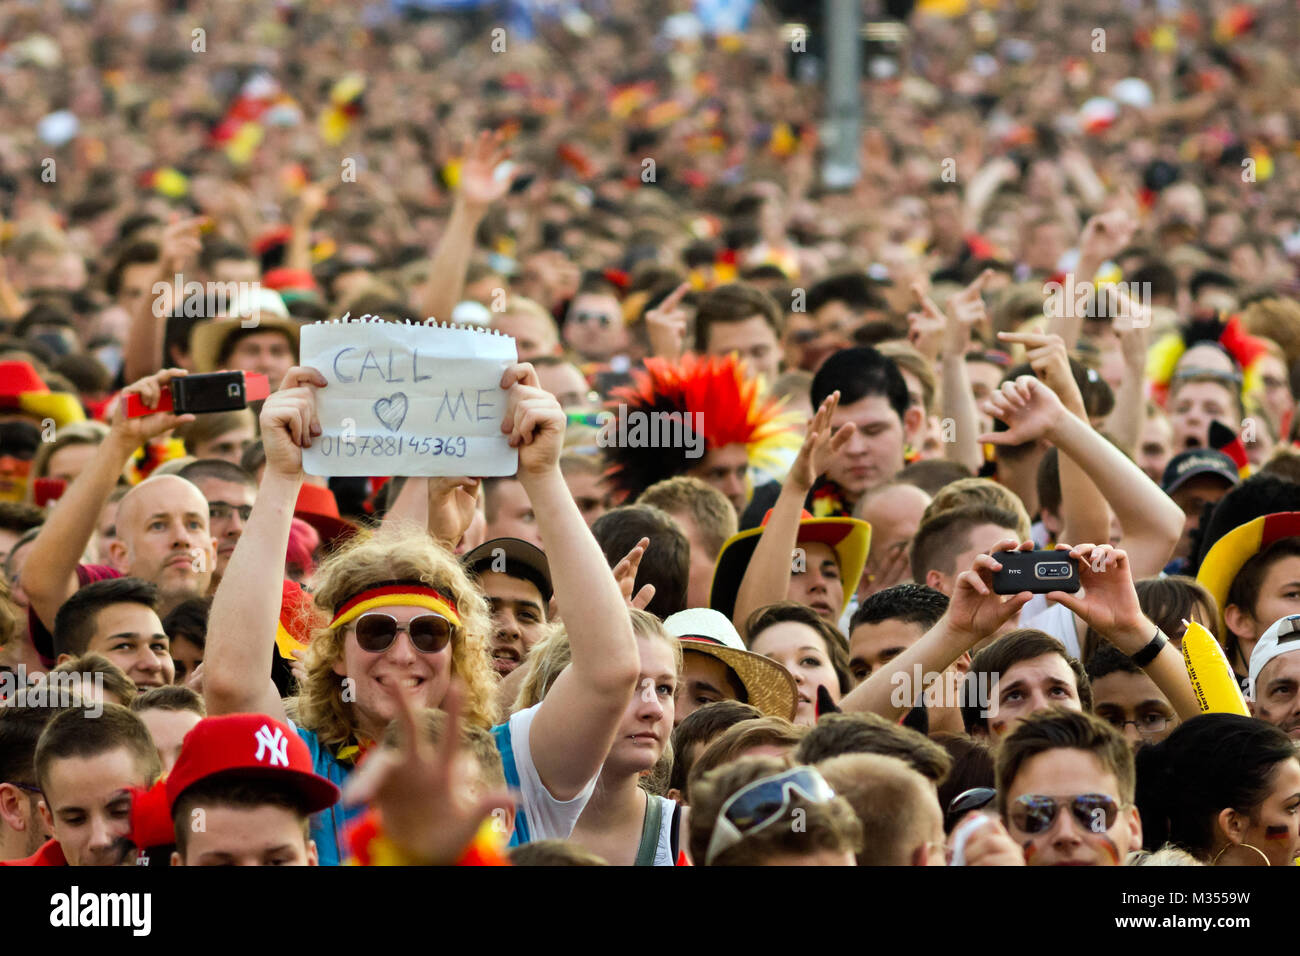 Menschenmassen verfolgen auf der riesigen Leinwand und freuen sich auf derFanmeile zur Europameisterschaft 2012 Deutschland gegen Griechenland am Brandenburger Tor en Berlín. Foto de stock